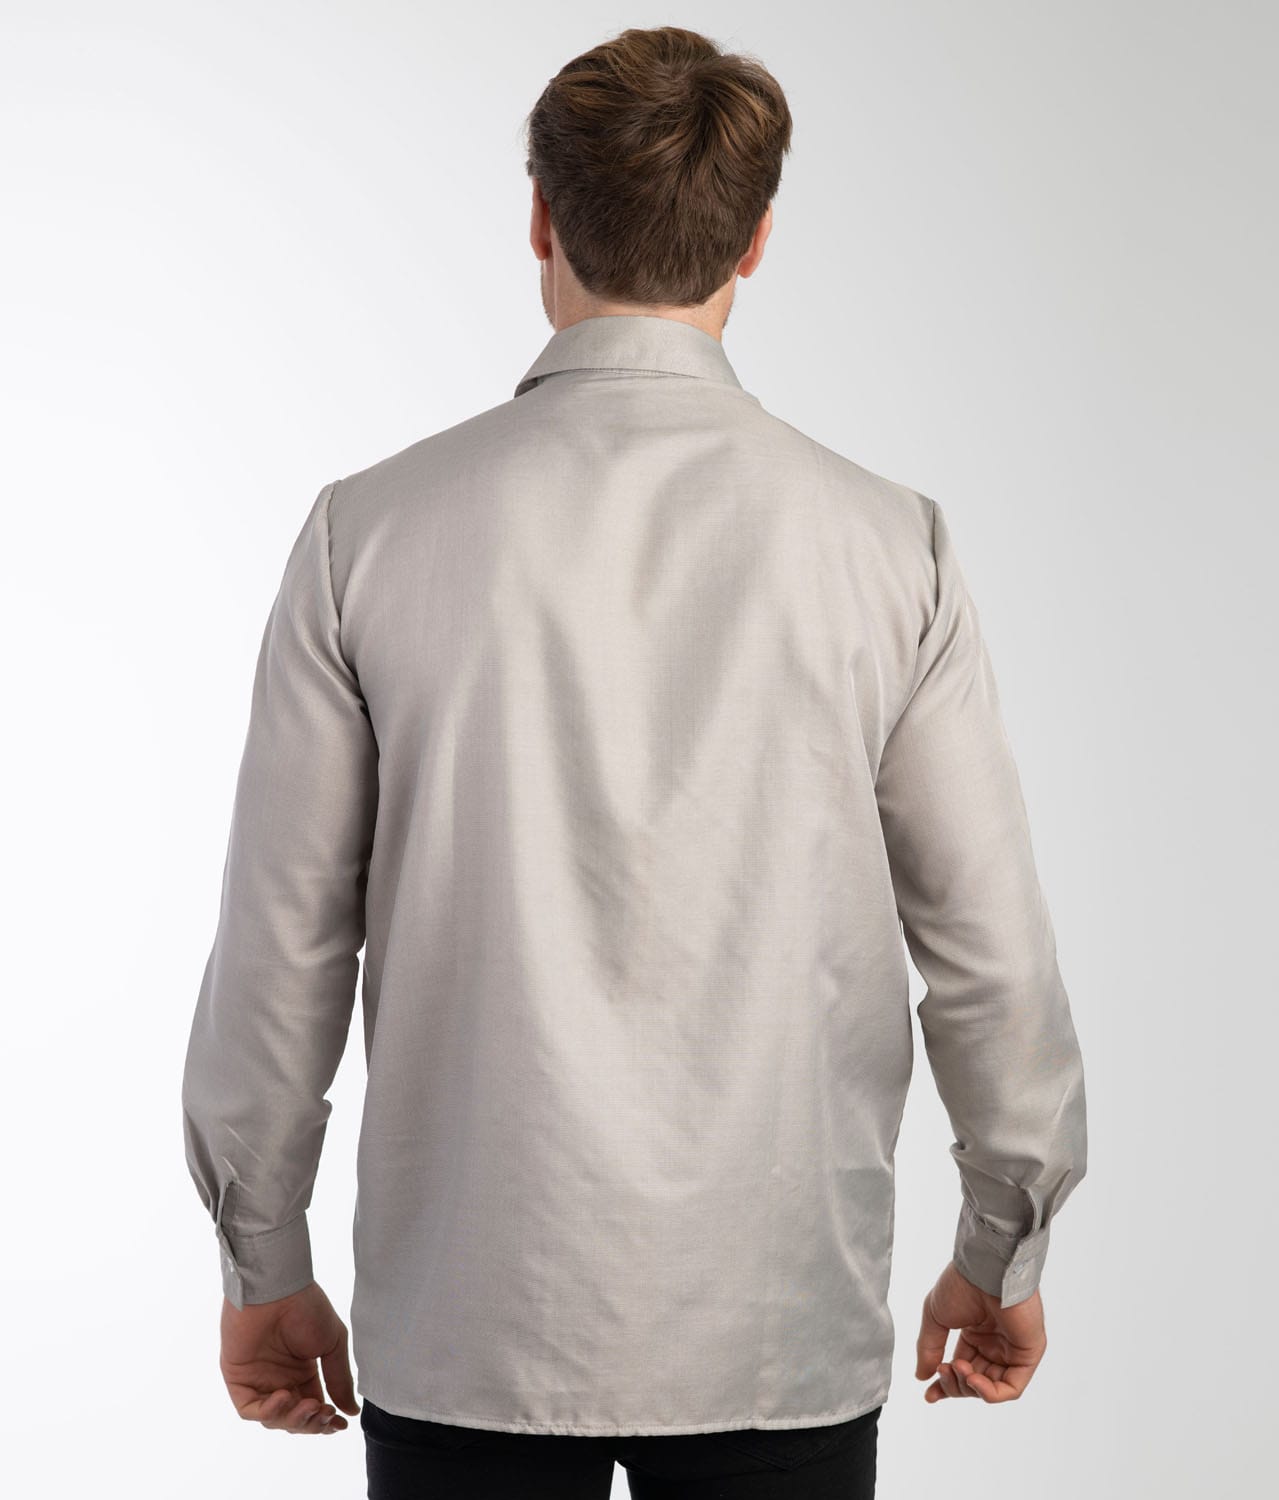 EMF Shielding Shirt Leblok® for Men